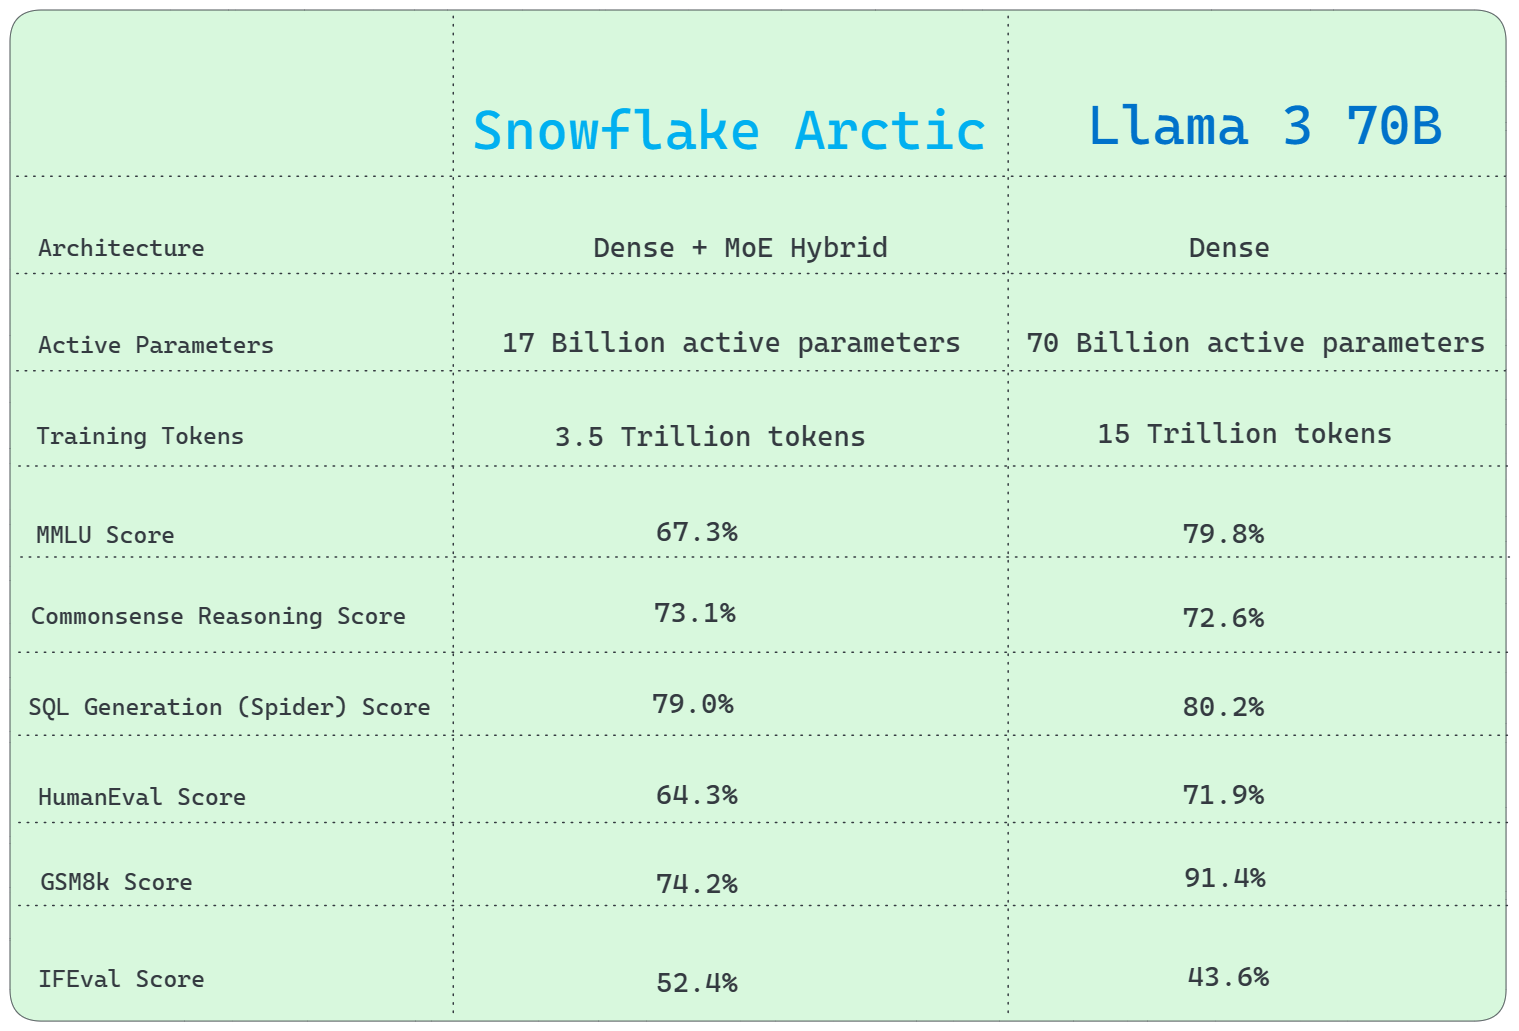 Snowflake Arctic vs. Llama 3 70B